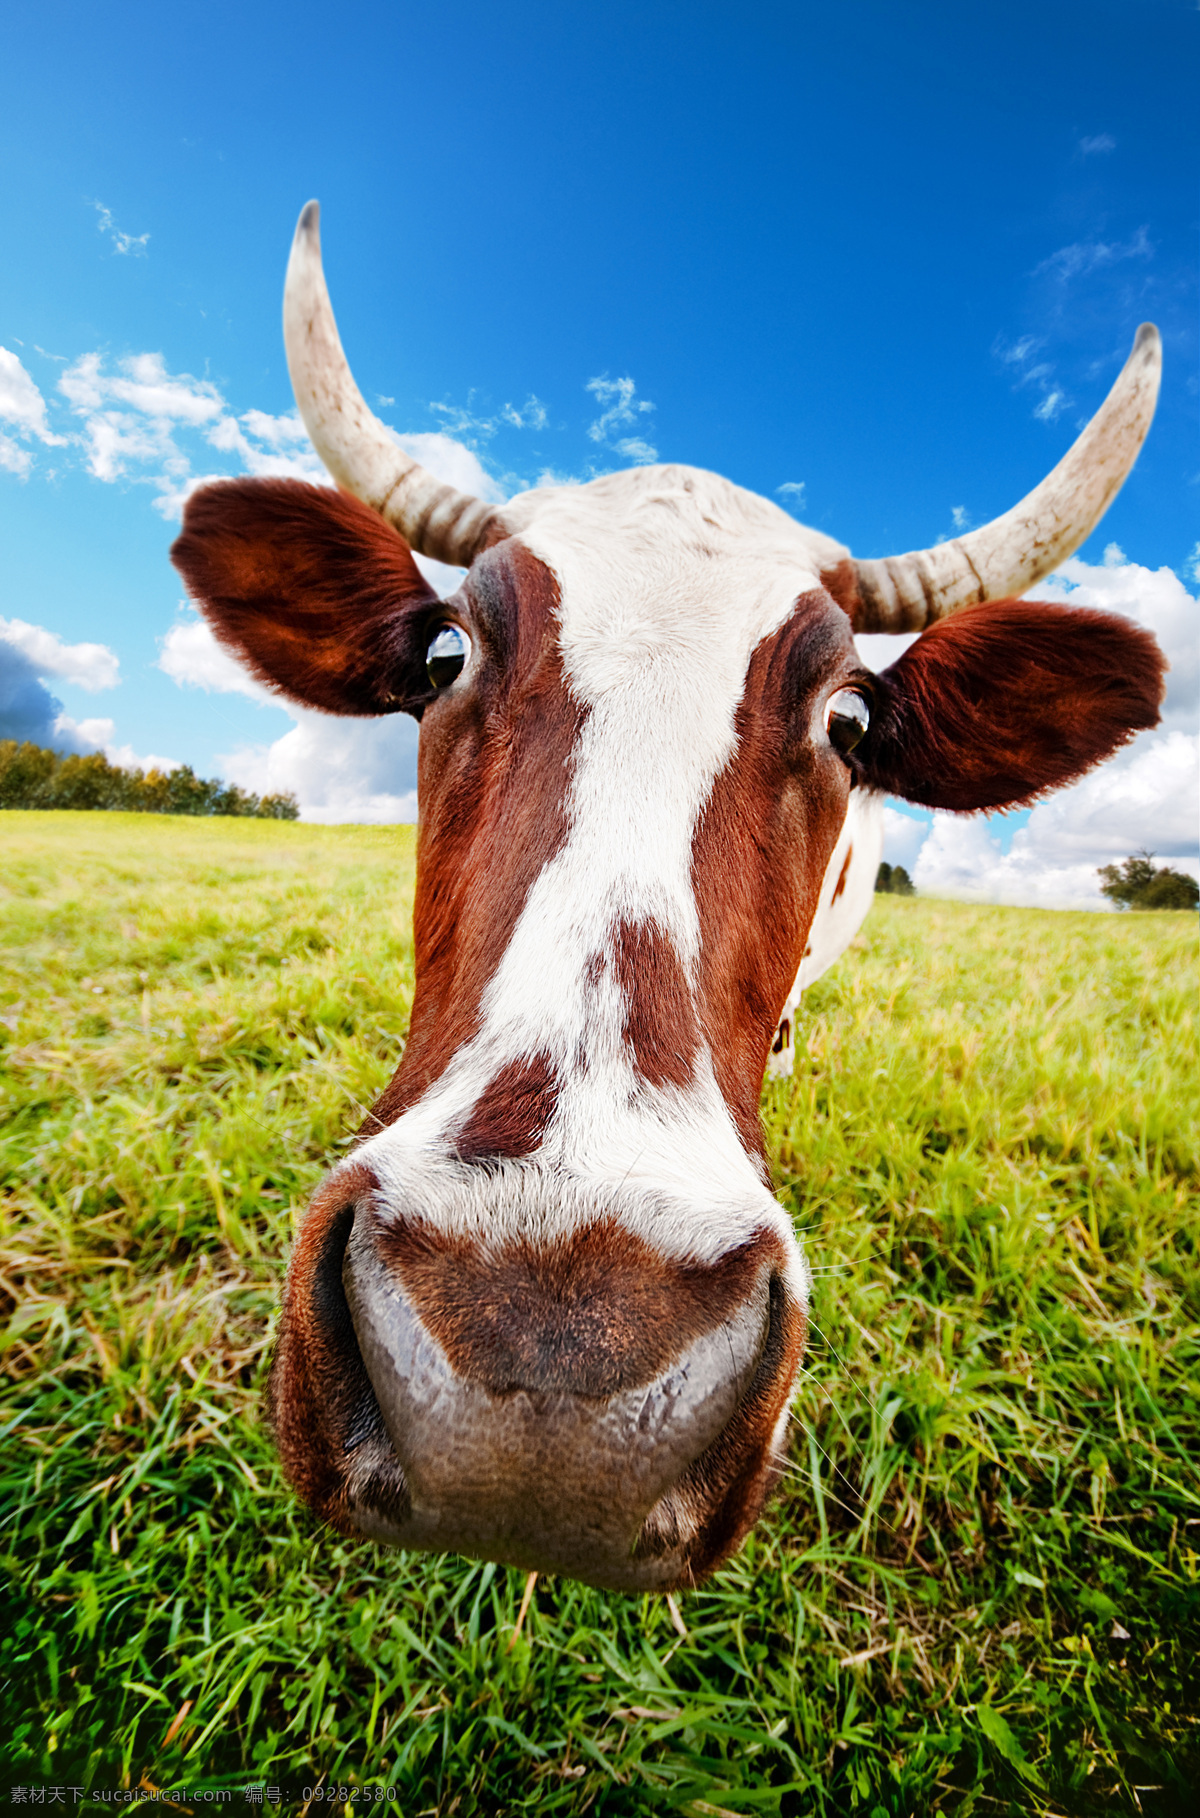 牛 牛群 牧场 奶牛场 农场 畜牧业 畜牧 产业 农业 生态农业 生态农场 牛特写 牛素材 动物 可爱奶牛 生物世界 家禽家畜